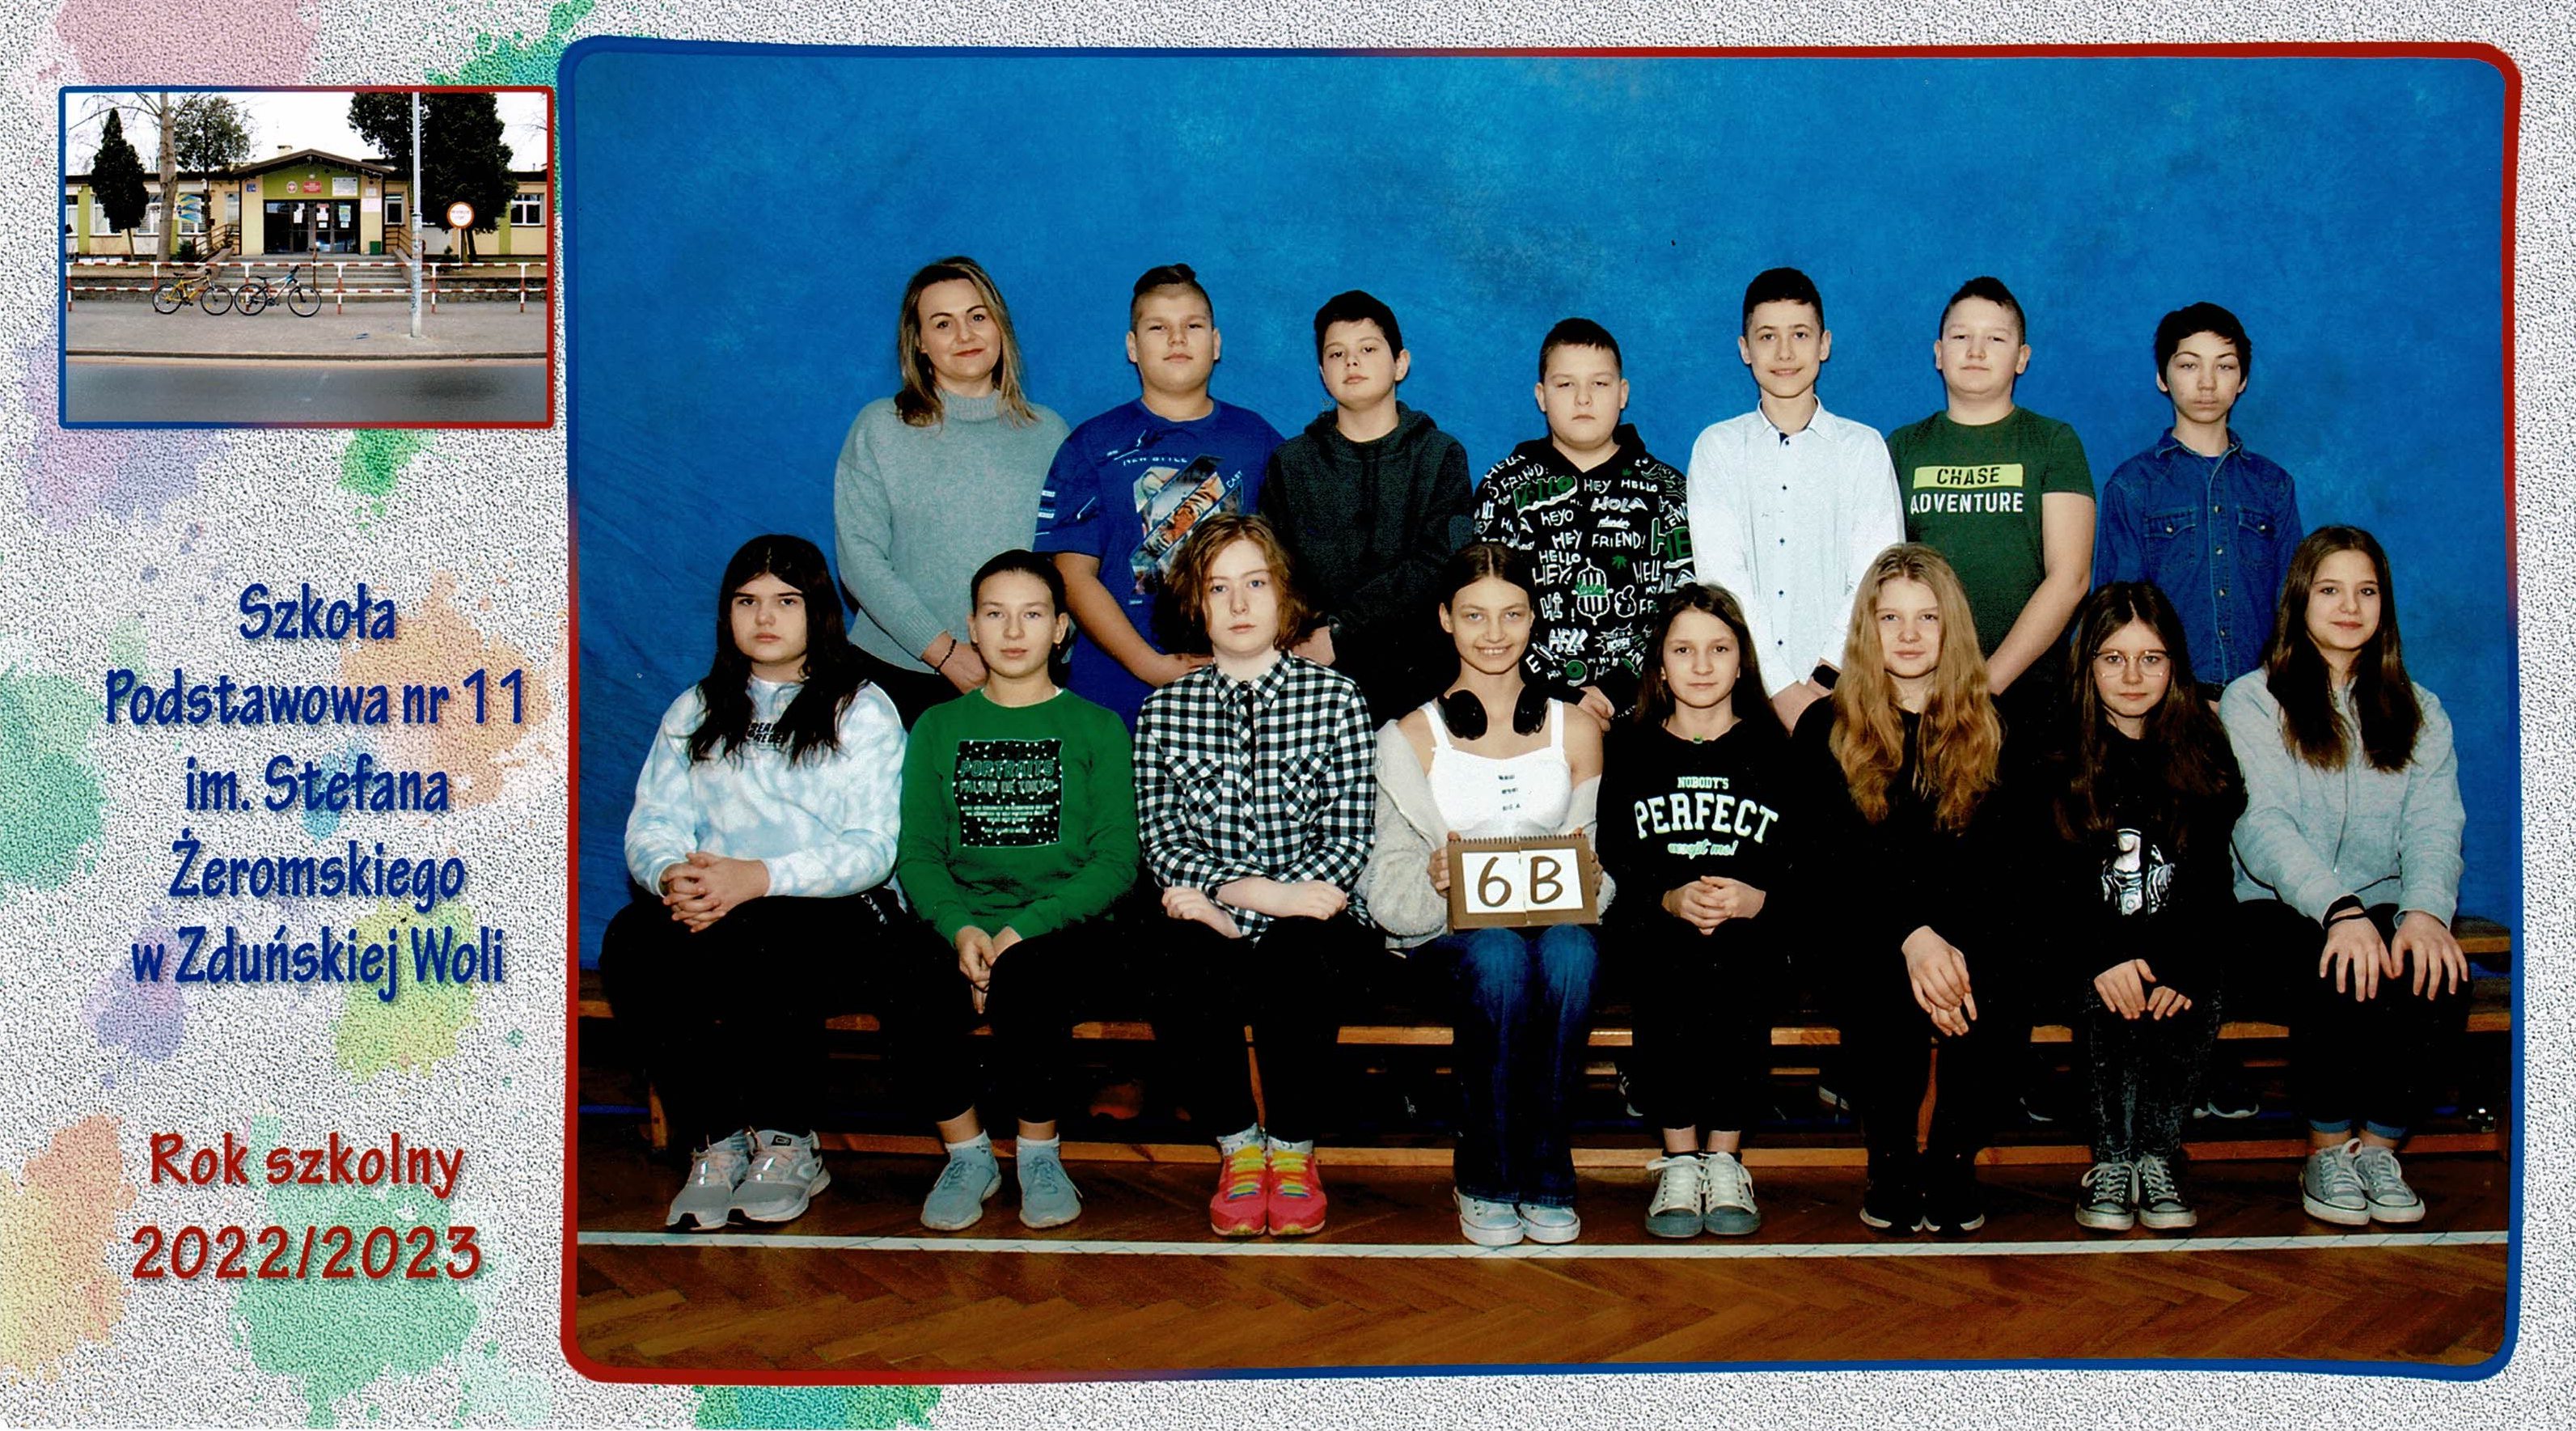 Uczniowie klasy 6b, dziewczynki i chłopcy siedzący na ławce z tabliczką "klasa 6b"